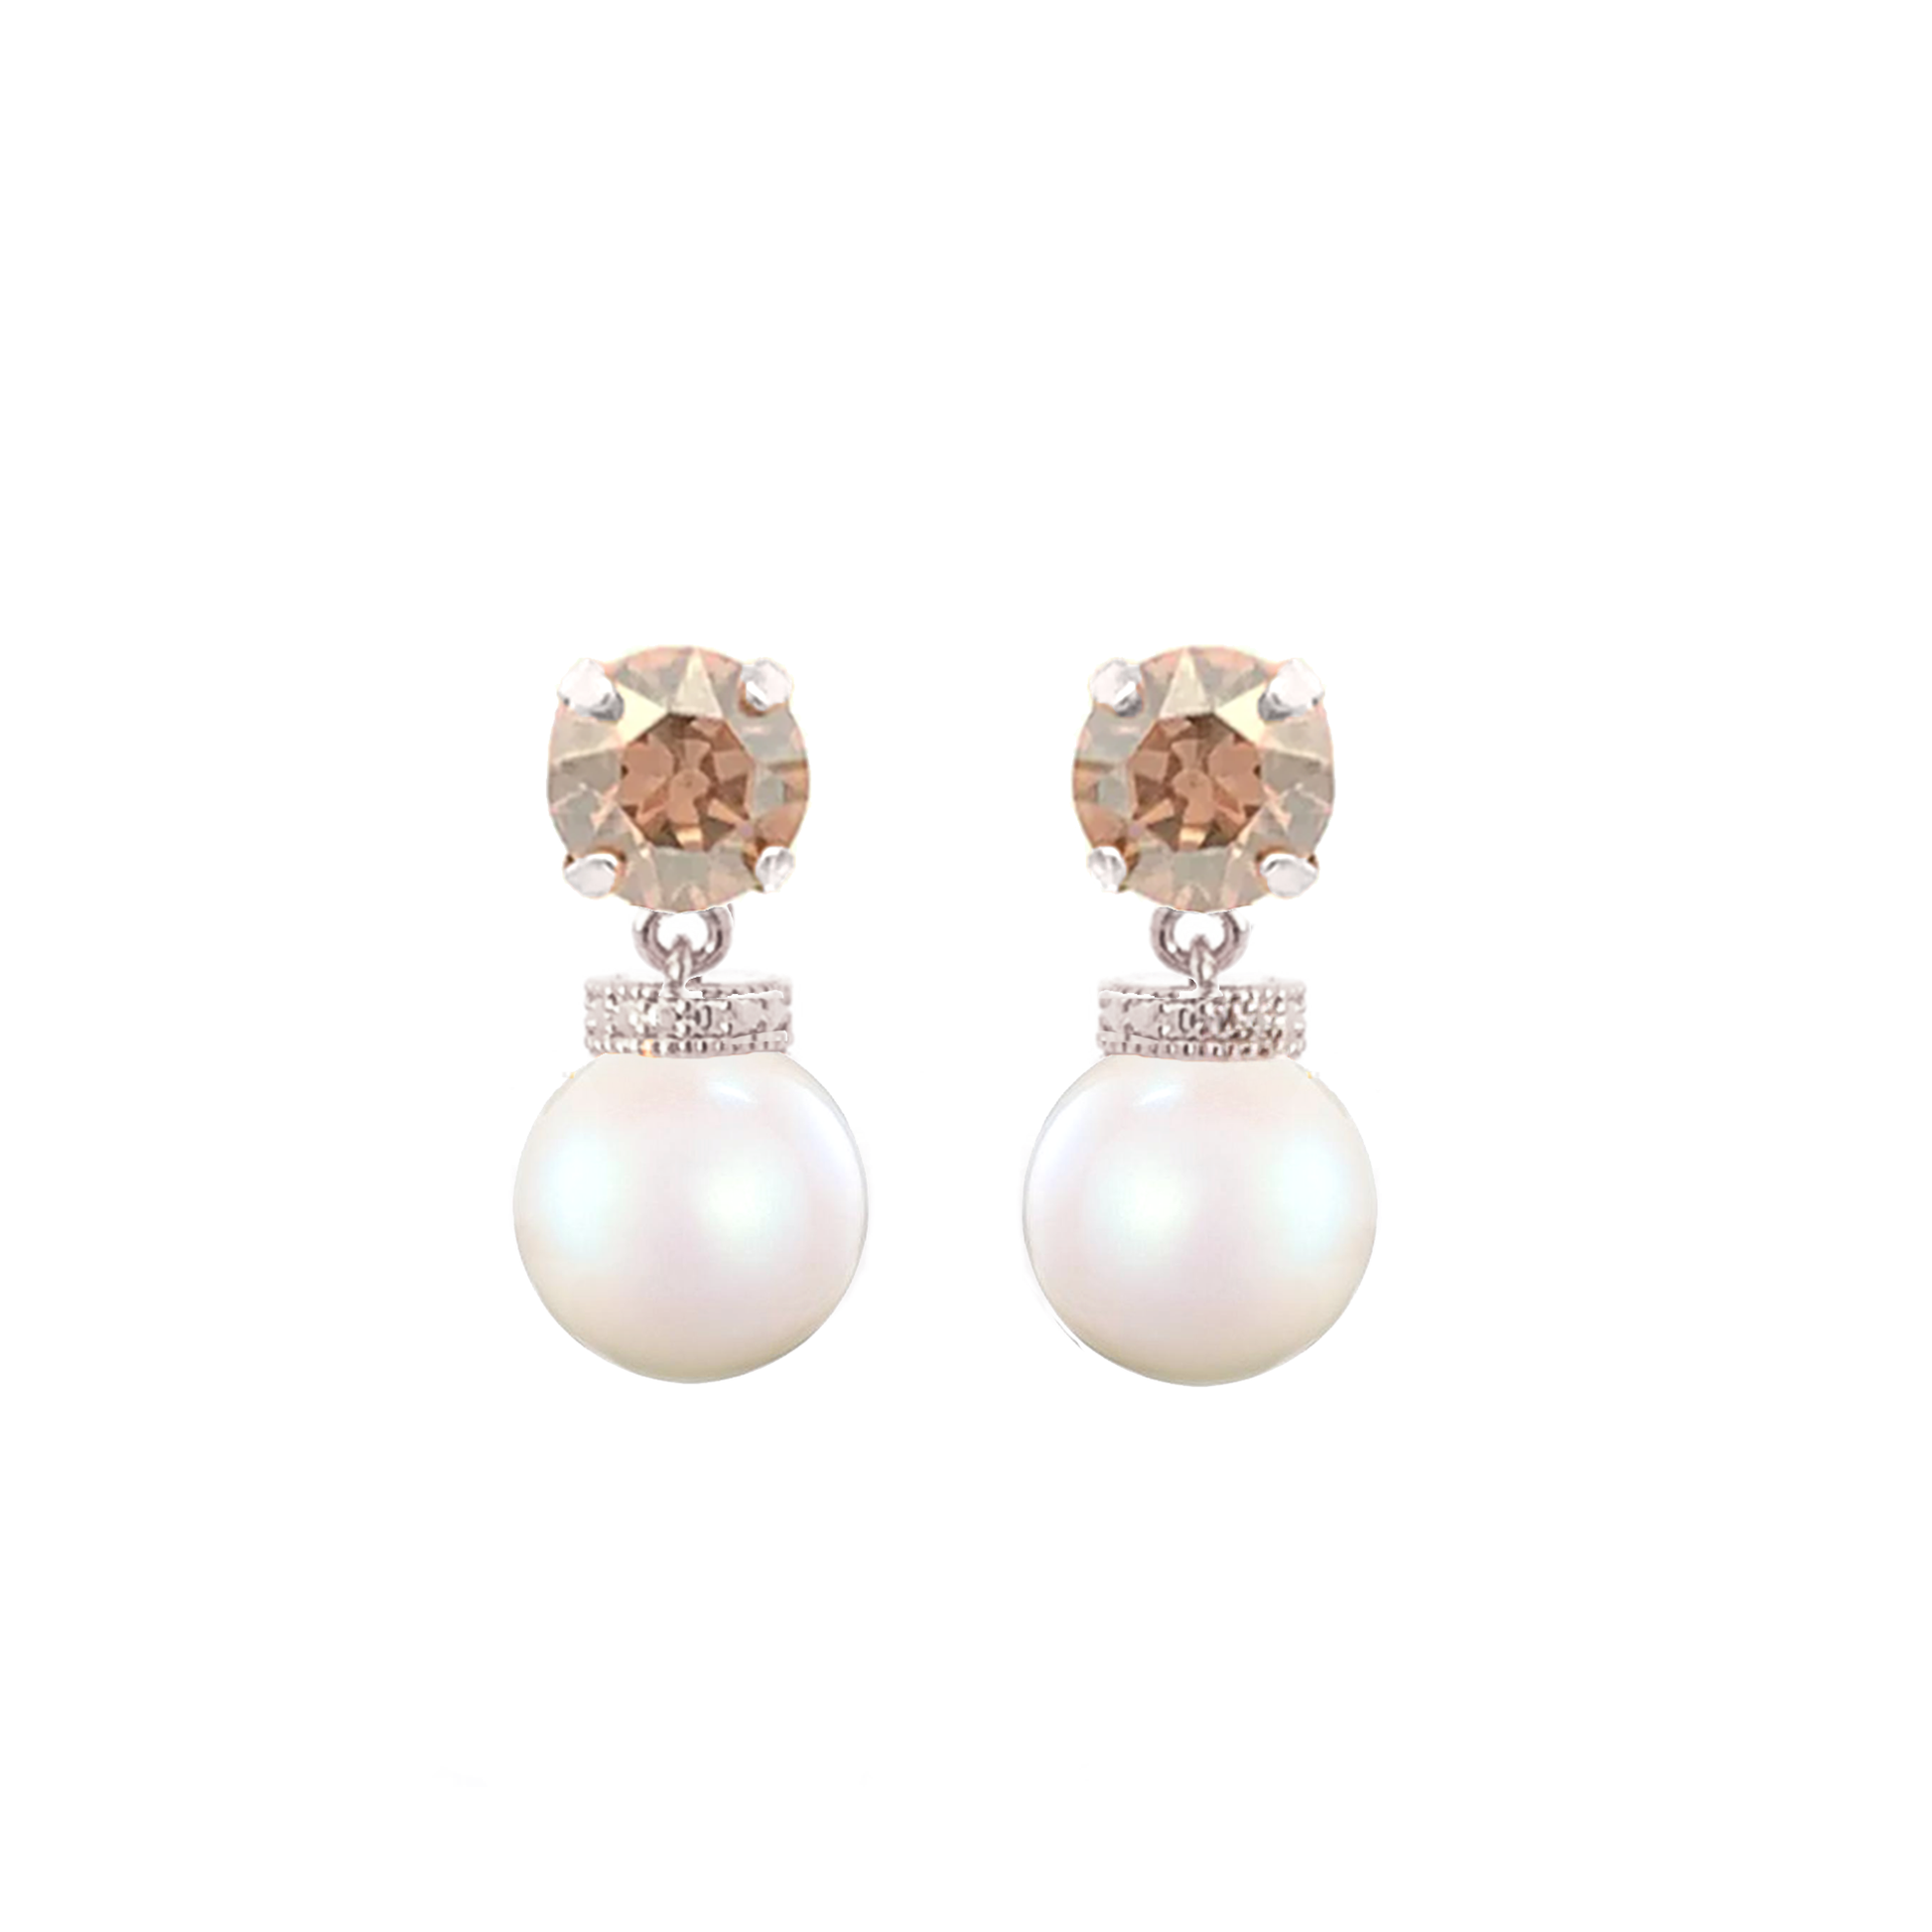 Golden topaz pearl drop earrings silver